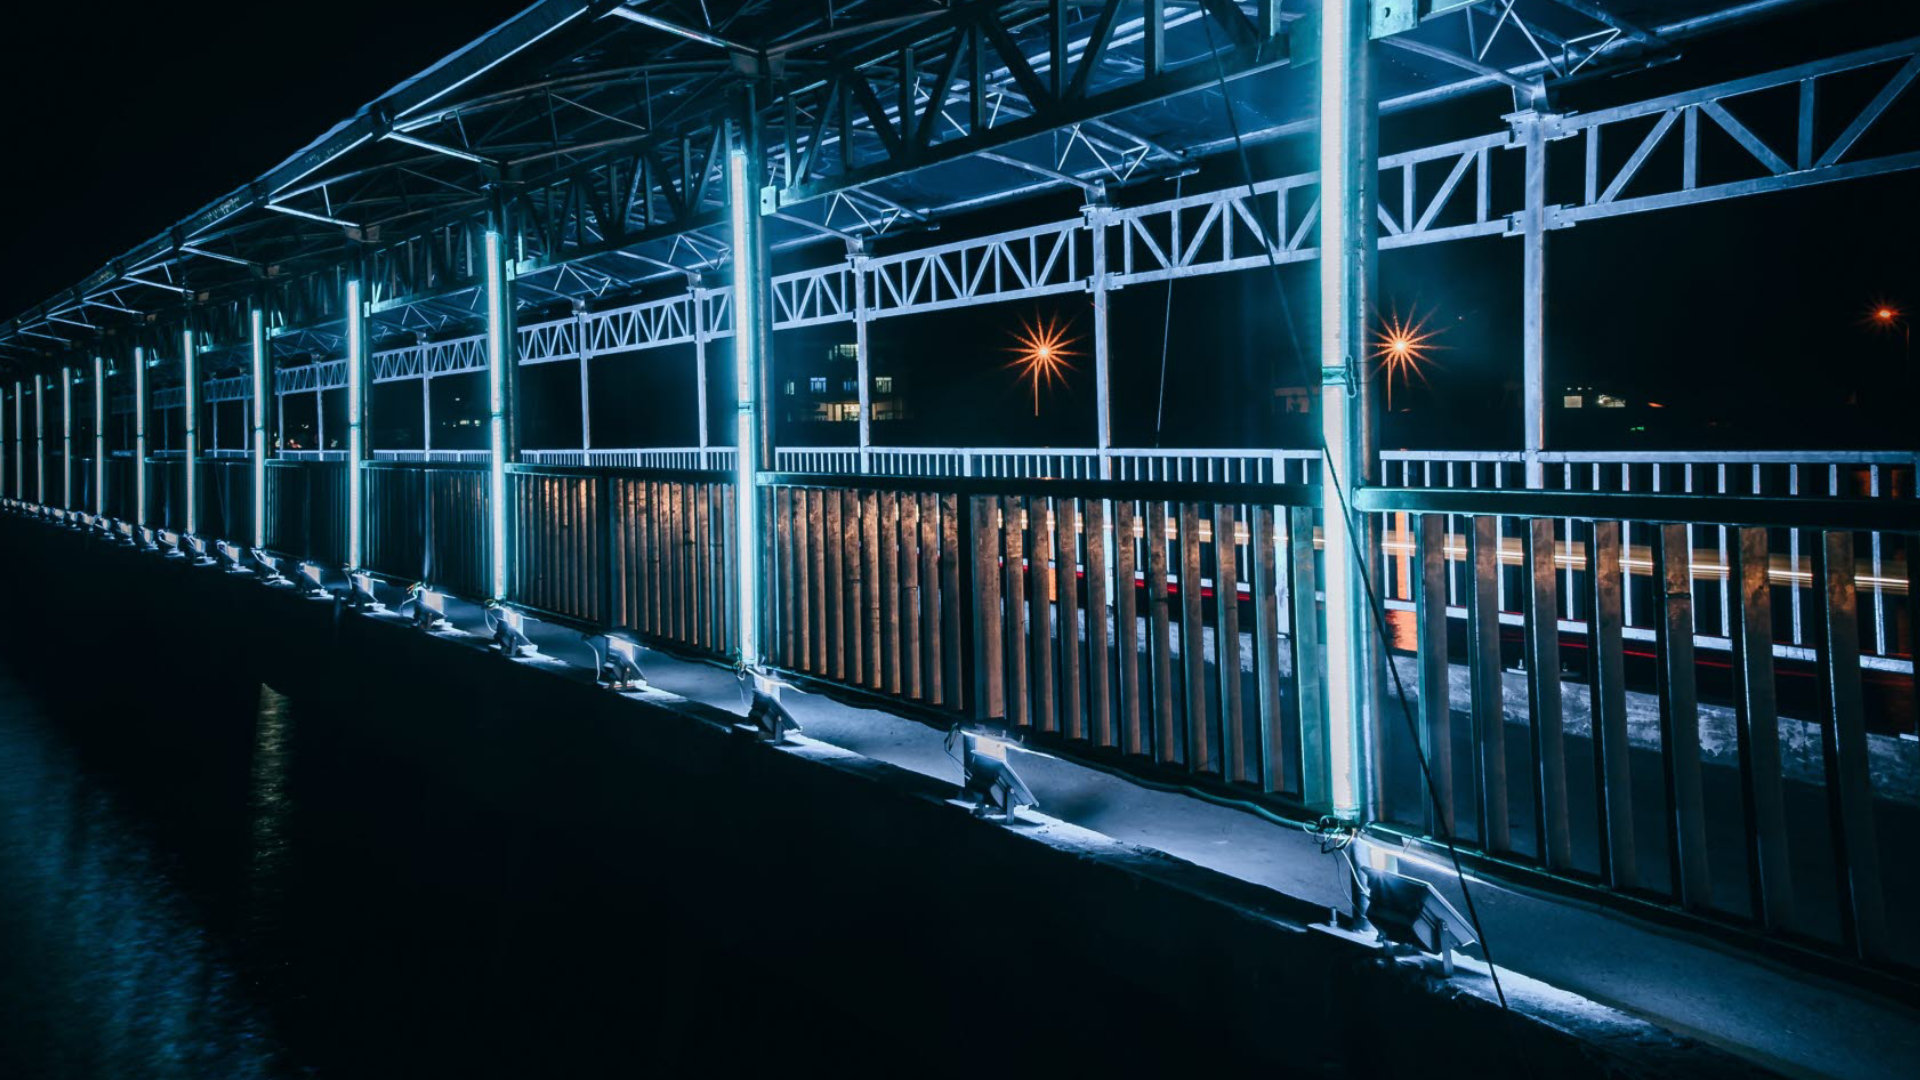 train-station-light-pexels.jpg